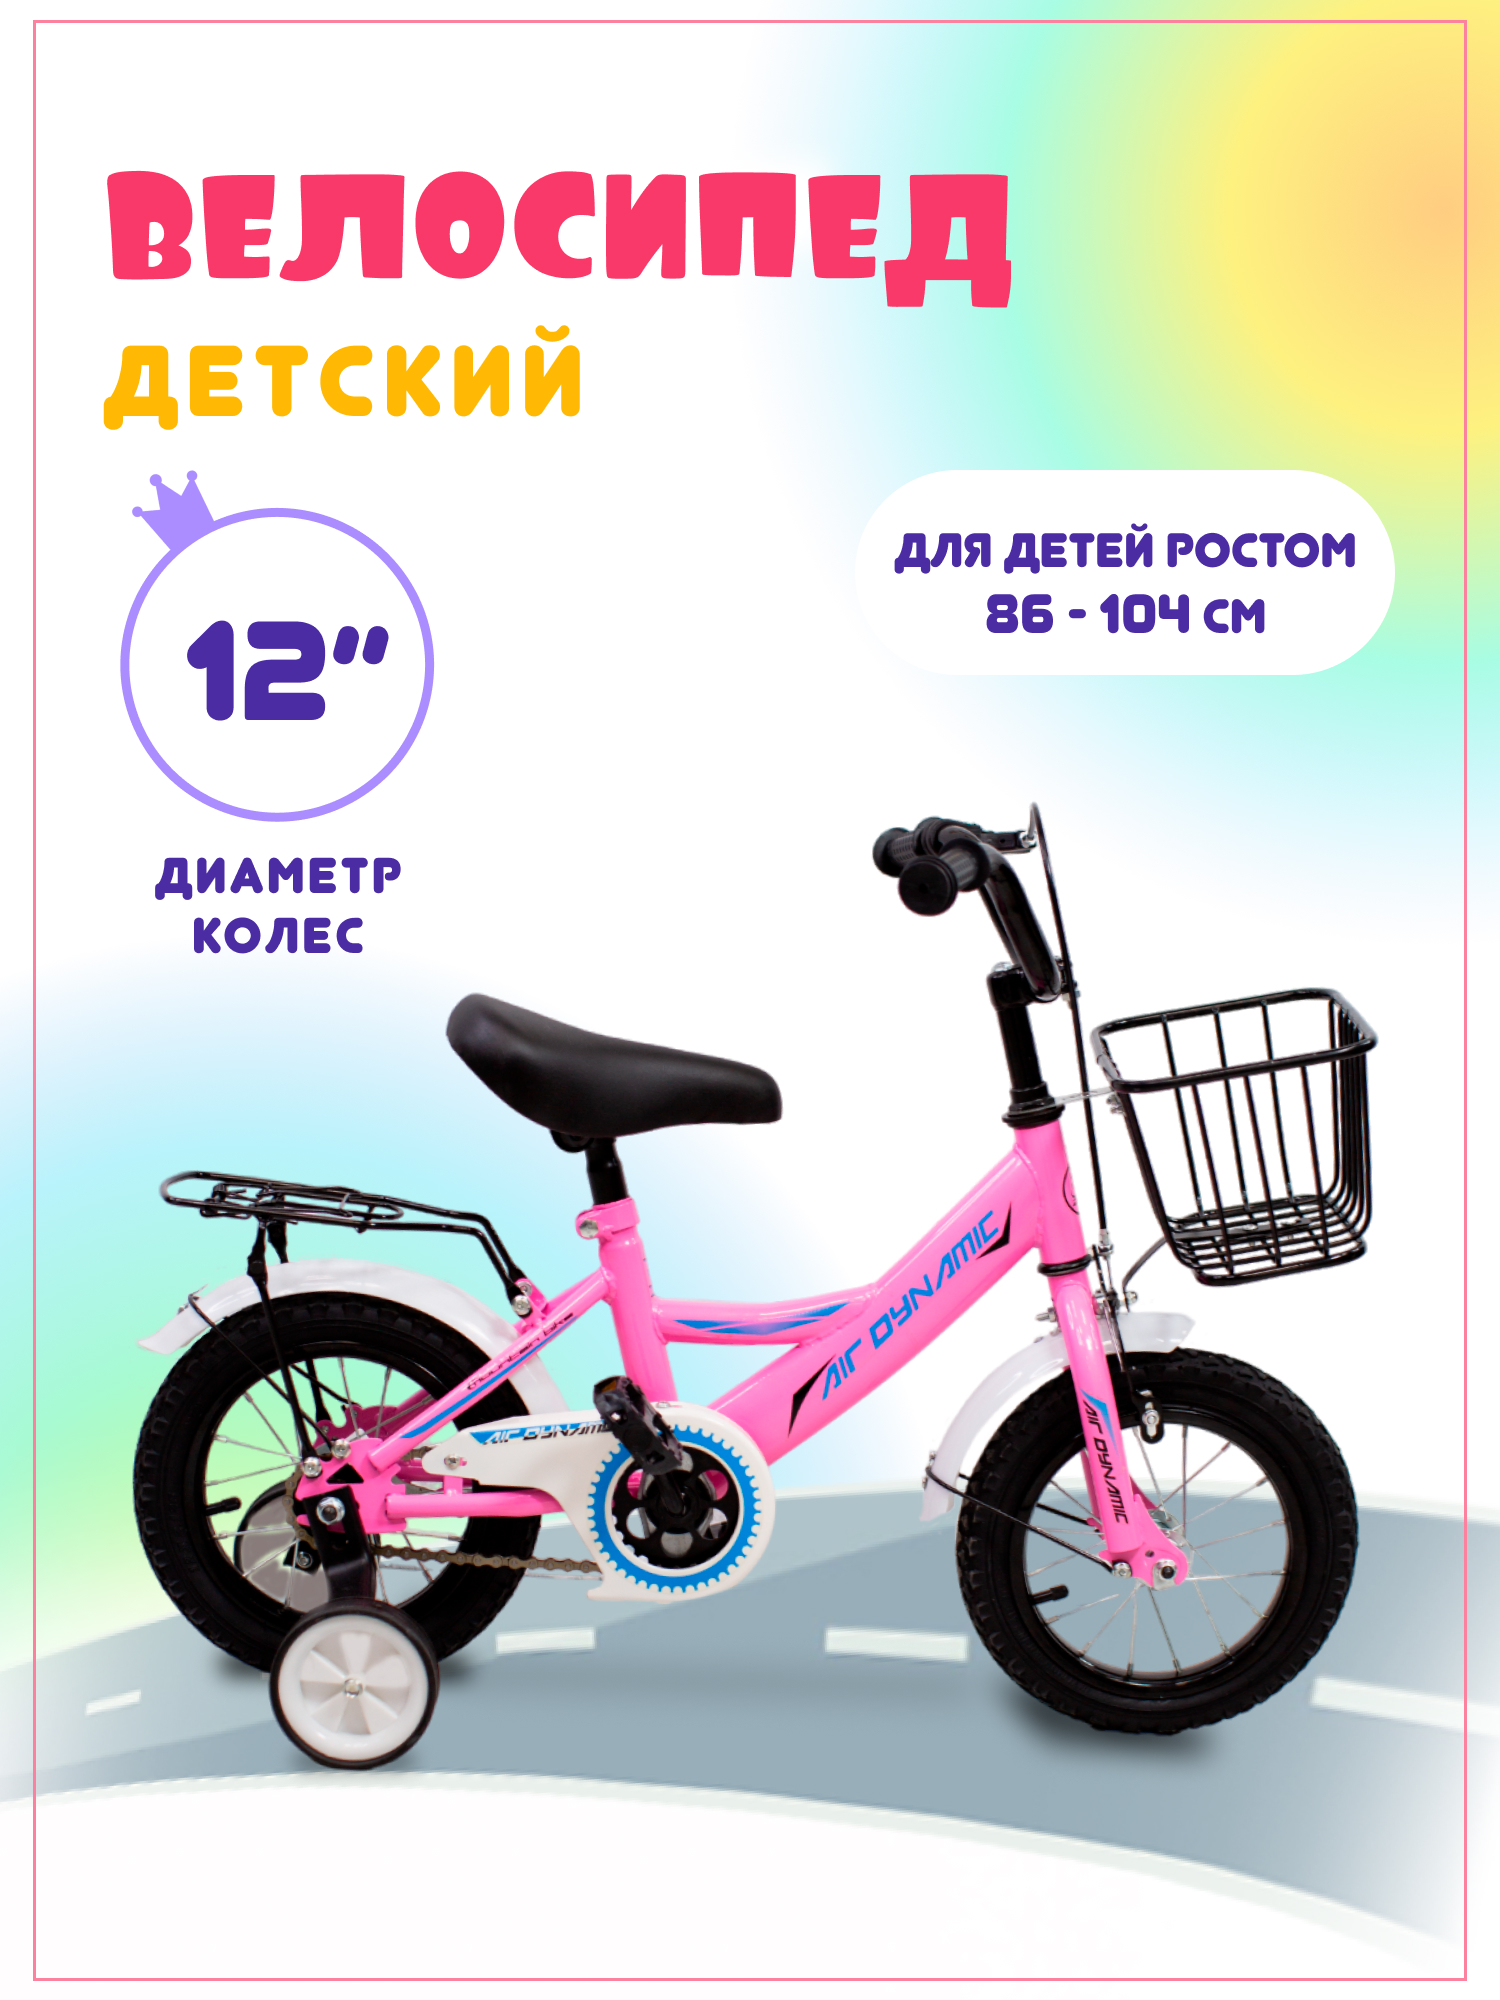 Велосипед детский двухколесный AirDynamic с дополнительными колесами, розовый багажник horst h028 24 28 к передним задним тормозам v брейк до 5 кг 00 170330